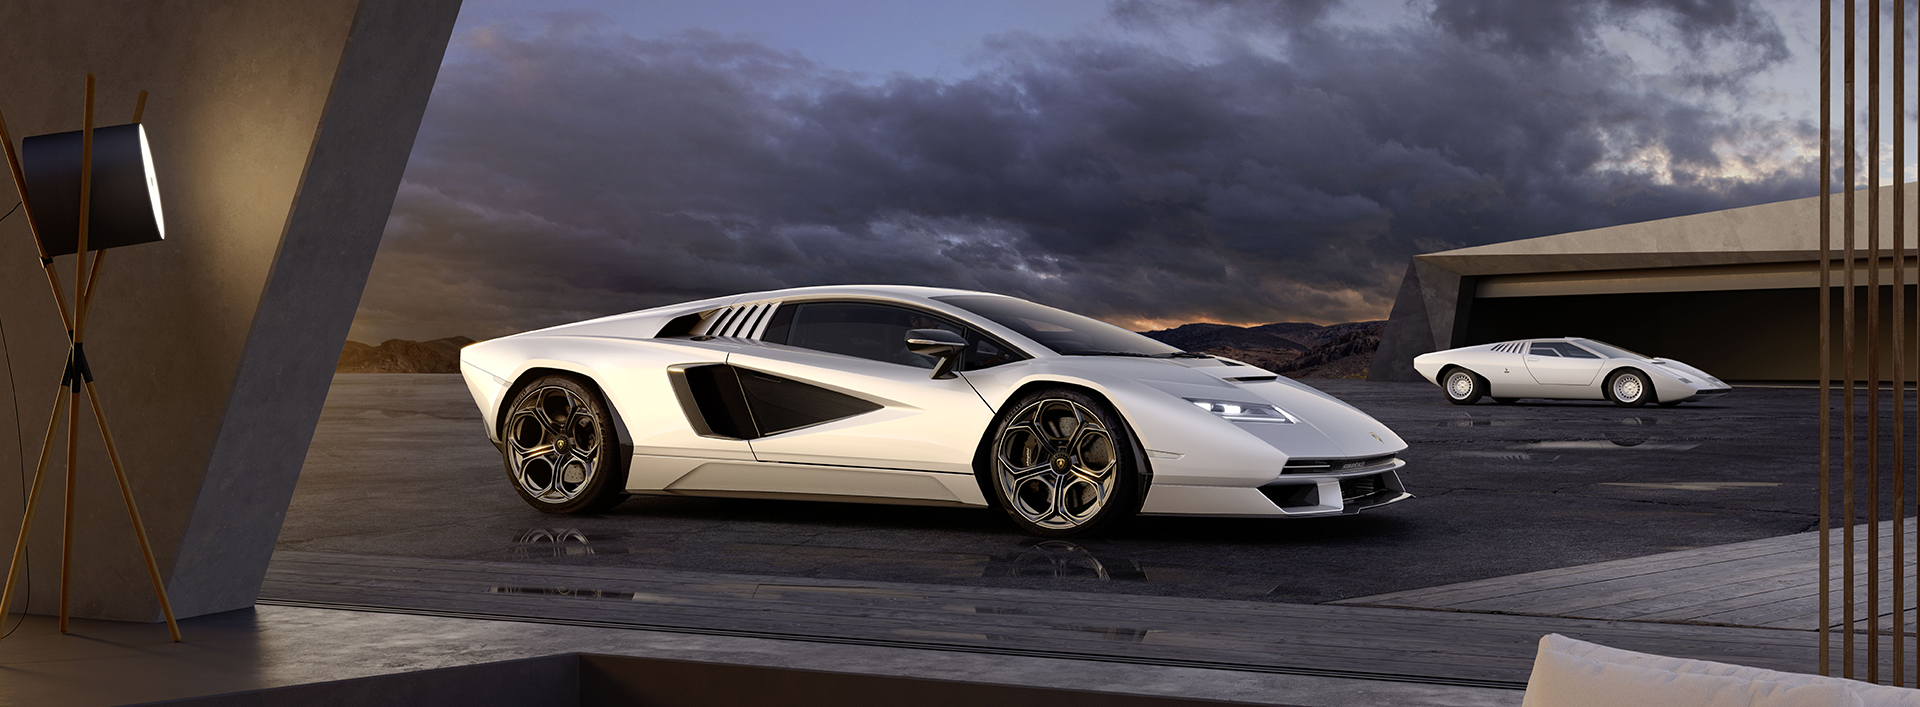 Đam mê thế giới xe hơi thể thao? Hãy thưởng thức những mẫu xe Lamborghini đầy mê hoặc trên Tàng trữ ảnh nền. Từ những chiếc xe đắt giá đến những chiếc xe có giá thành vừa phải, bạn sẽ tìm thấy những hình ảnh tuyệt đẹp để trang trí cho màn hình của mình. 